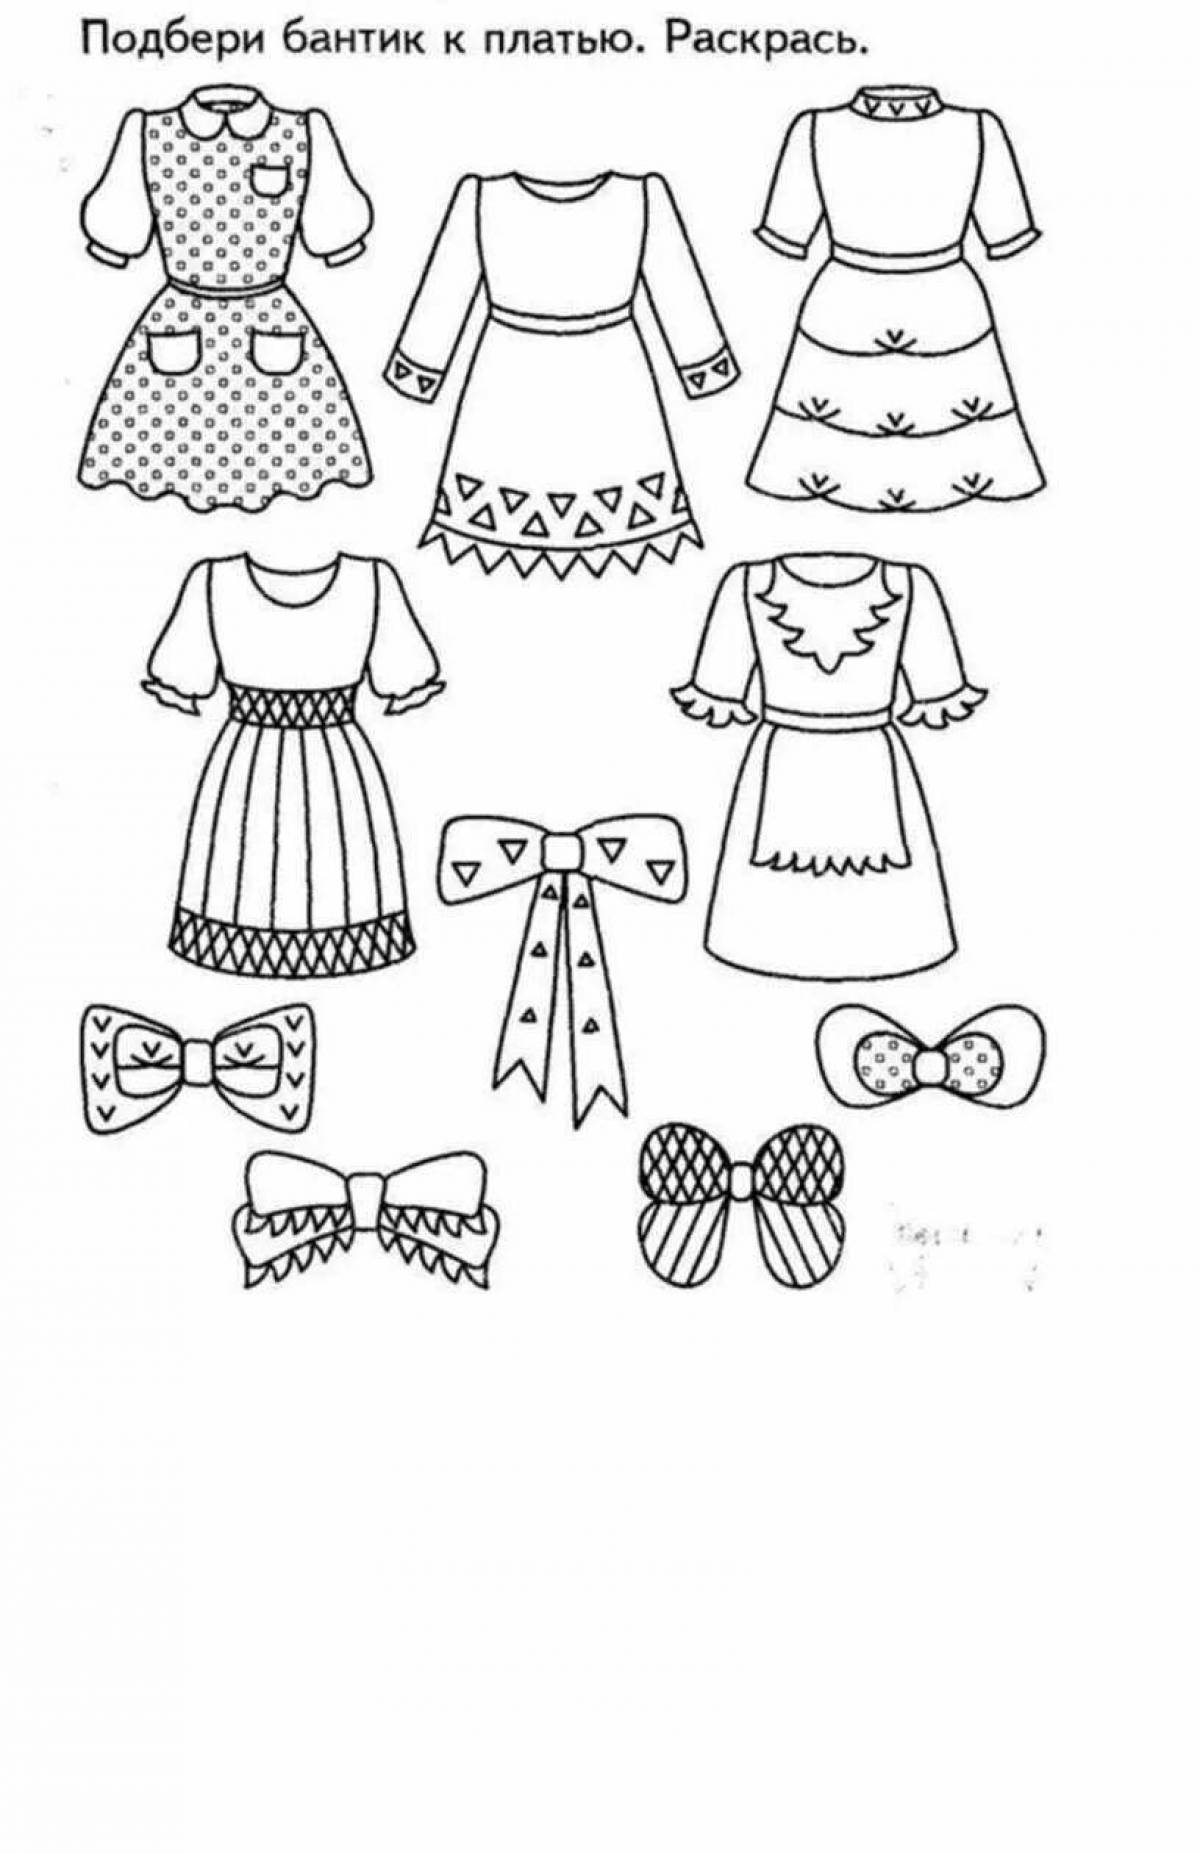 Платье для куклы для детей 3 4 лет #32